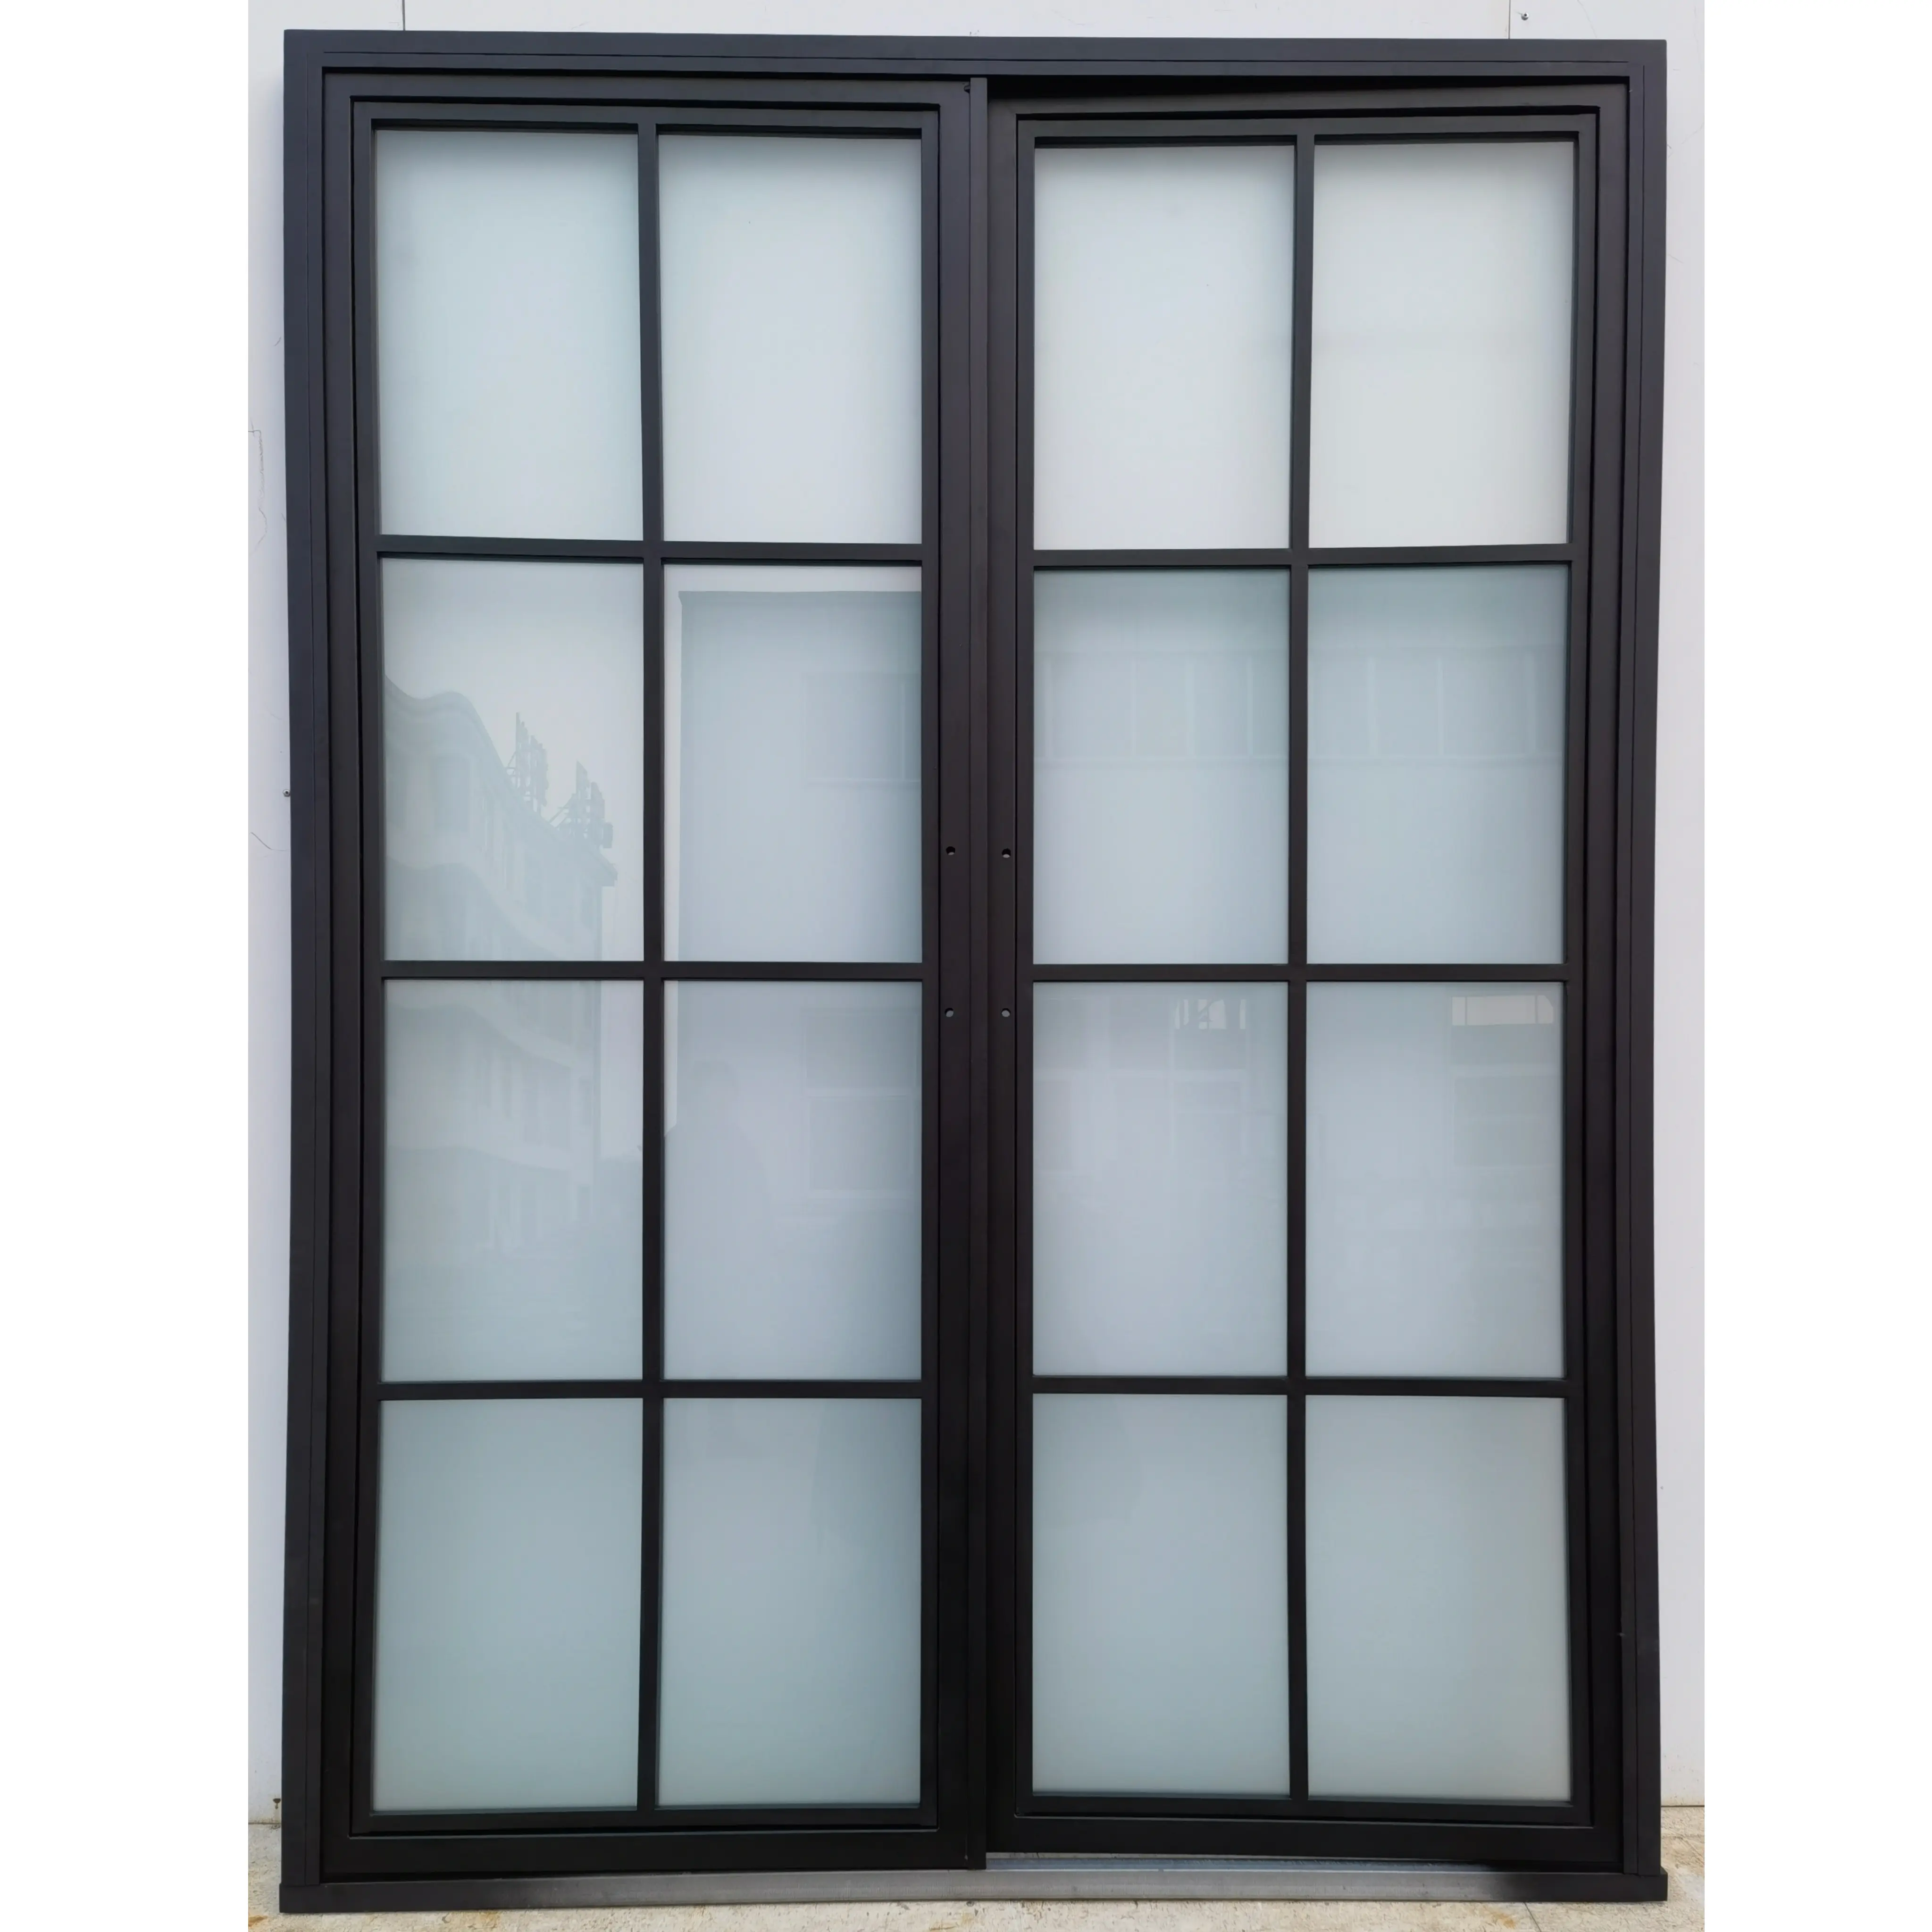 Ventanas de acero de estilo francés parrillas de ventana francesas de acero suave perfil de acero galvanizado para ventanas y puertas